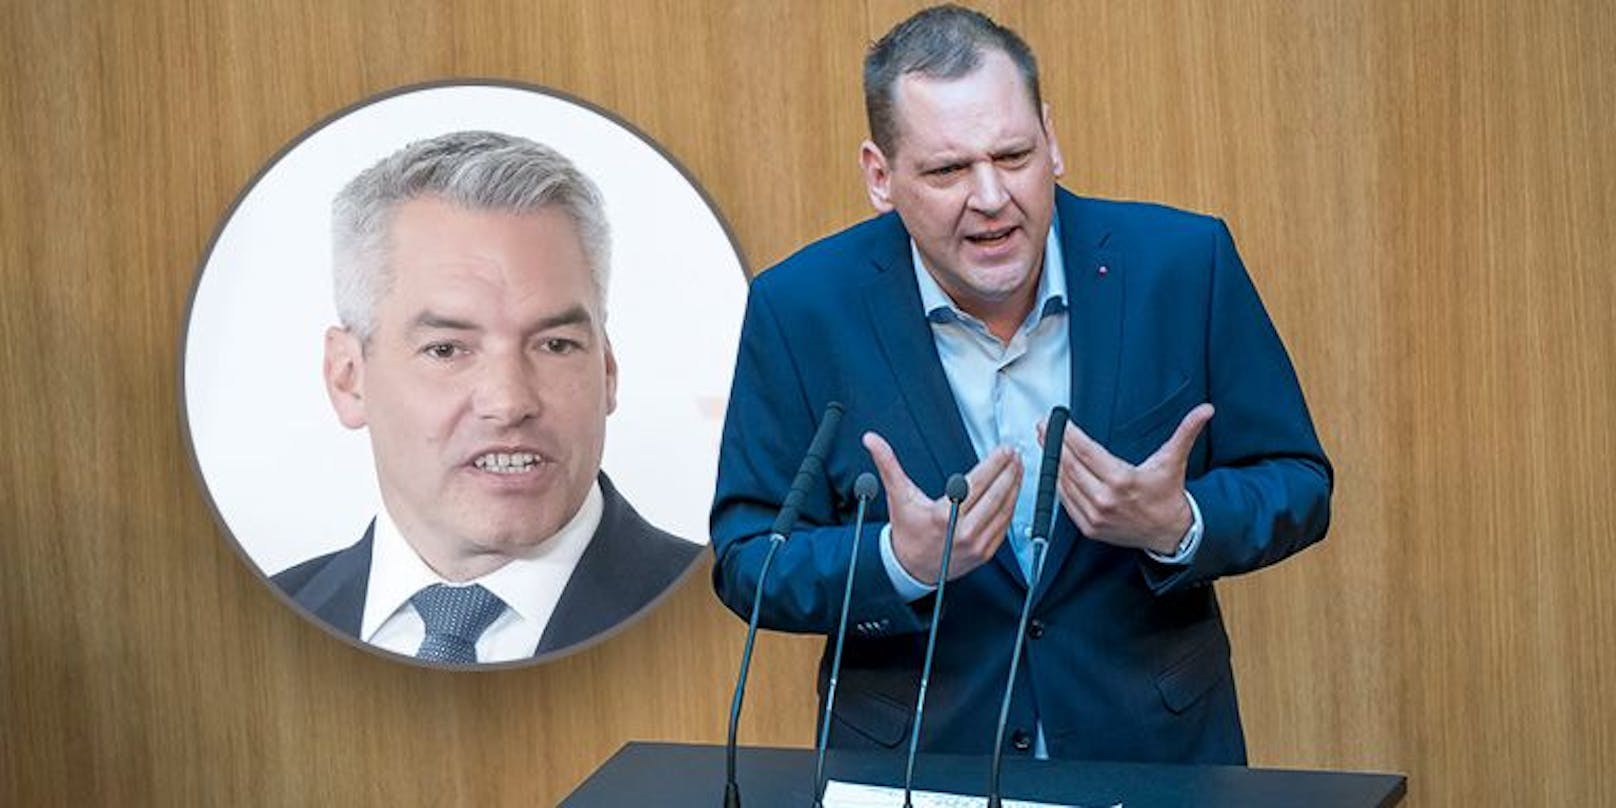 Parlament: SPÖ will heute Regierung aus dem Amt jagen